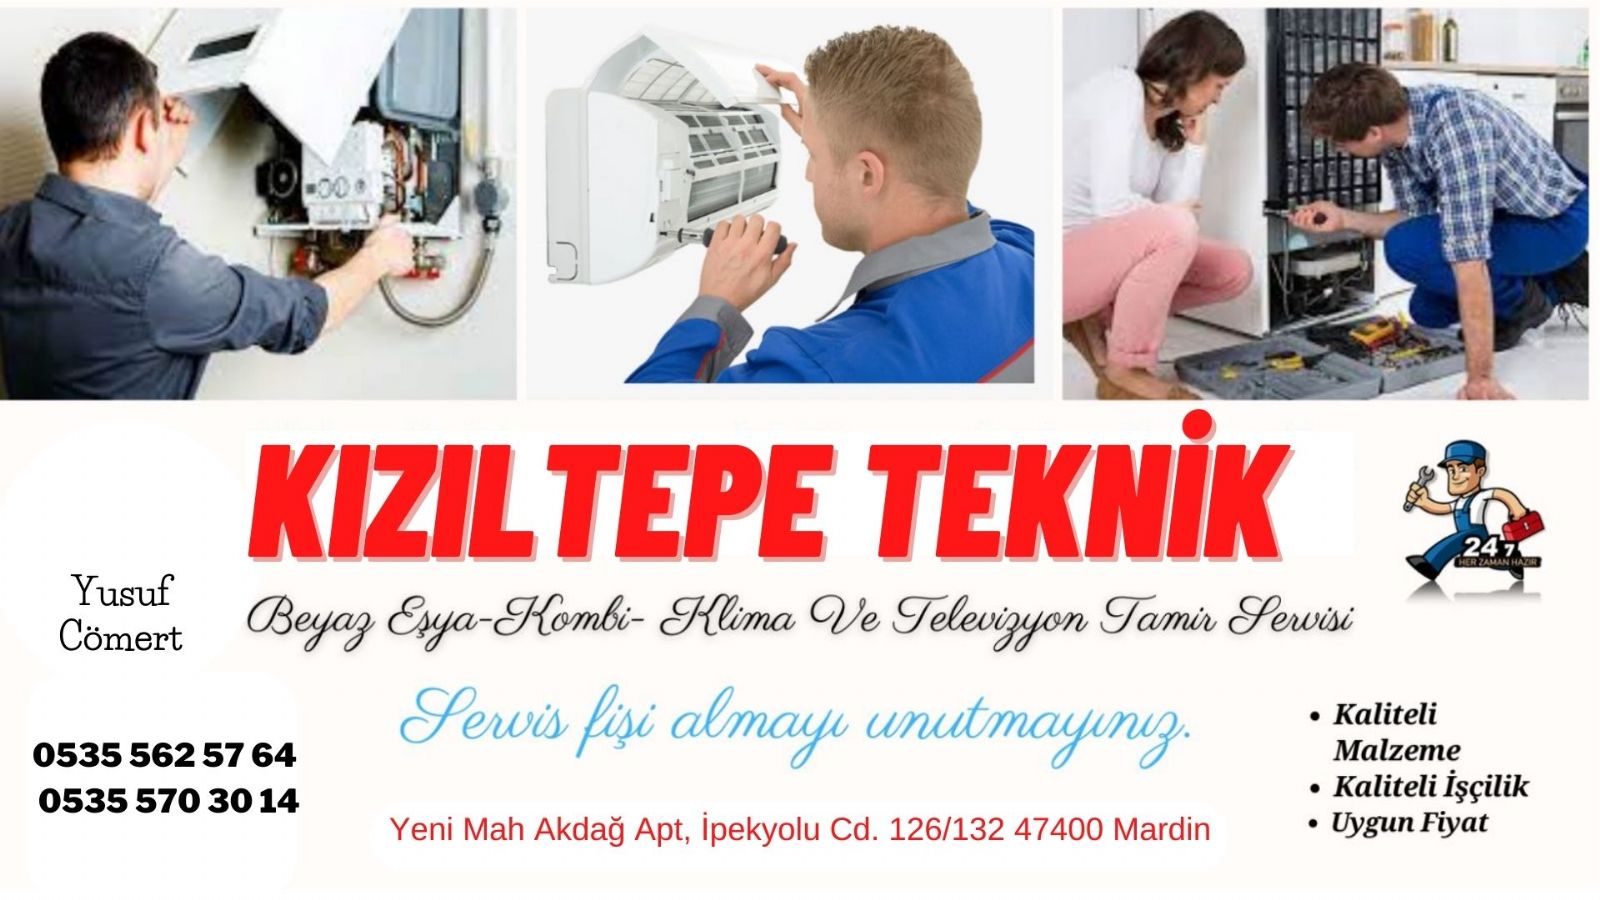 Kızıltepe Televizyon tamircisi